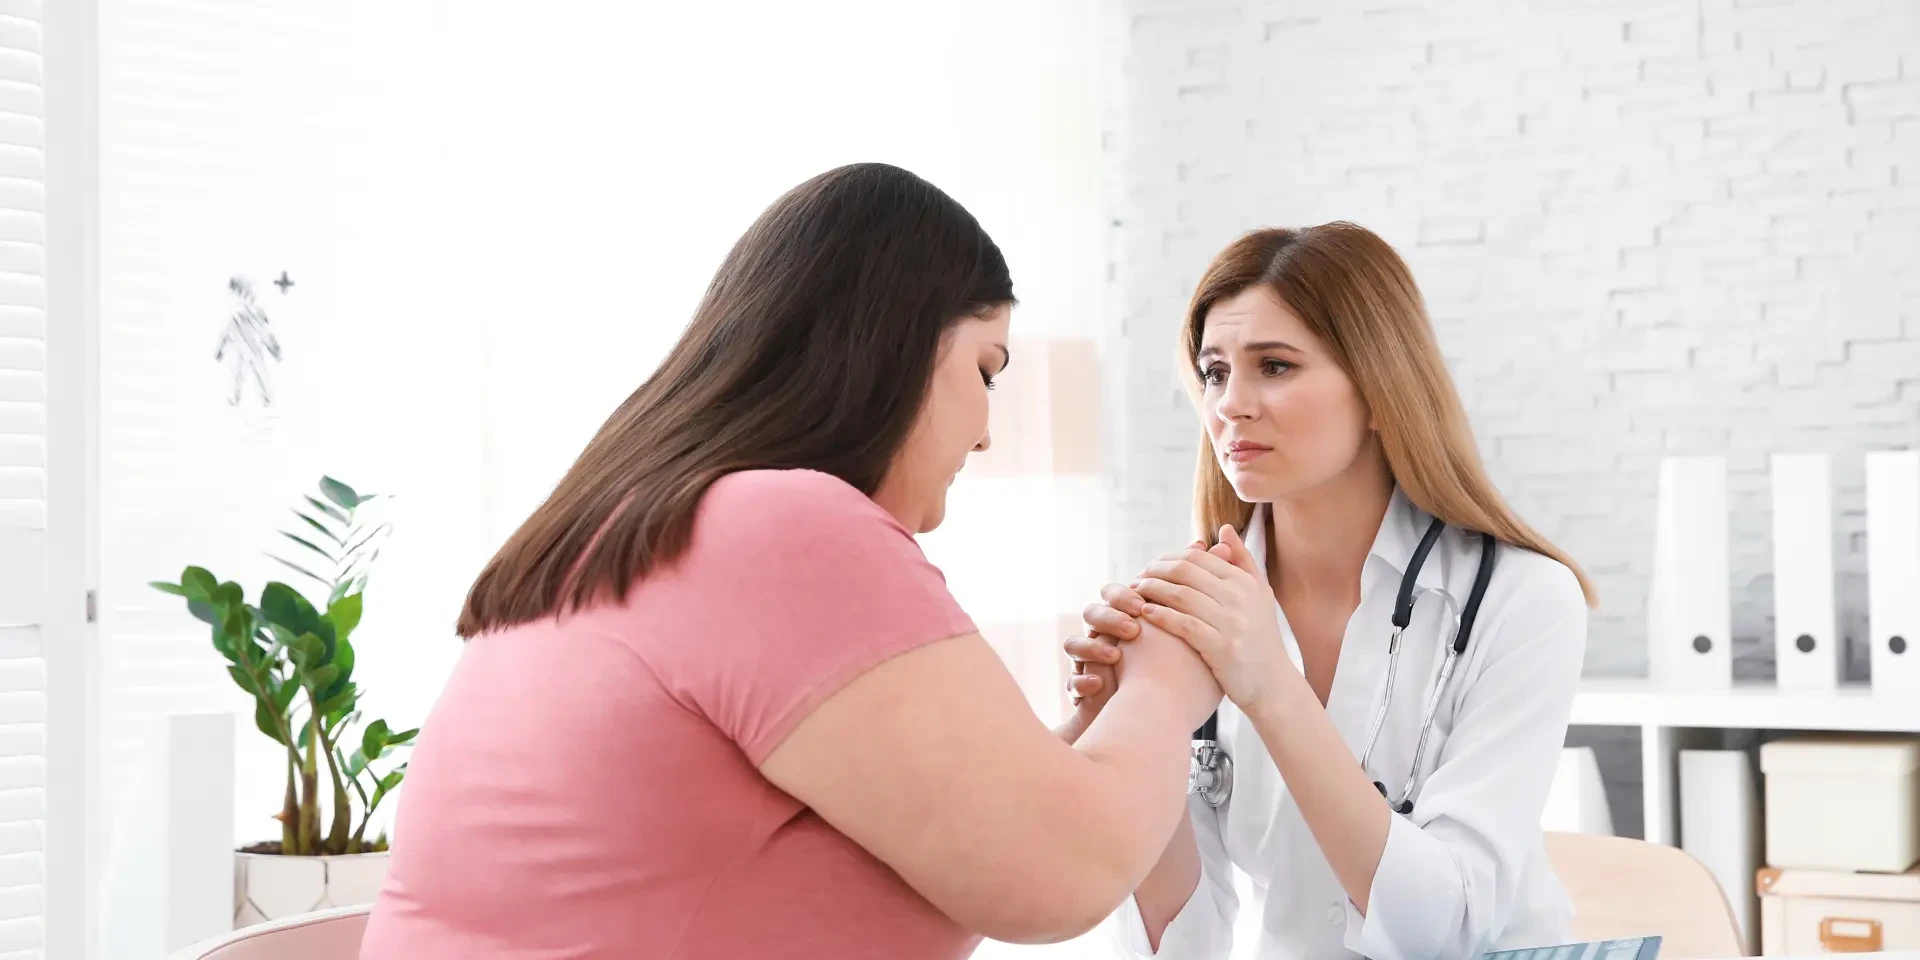 Doctora empática consultando a una paciente con sobrepeso en una clínica luminosa.